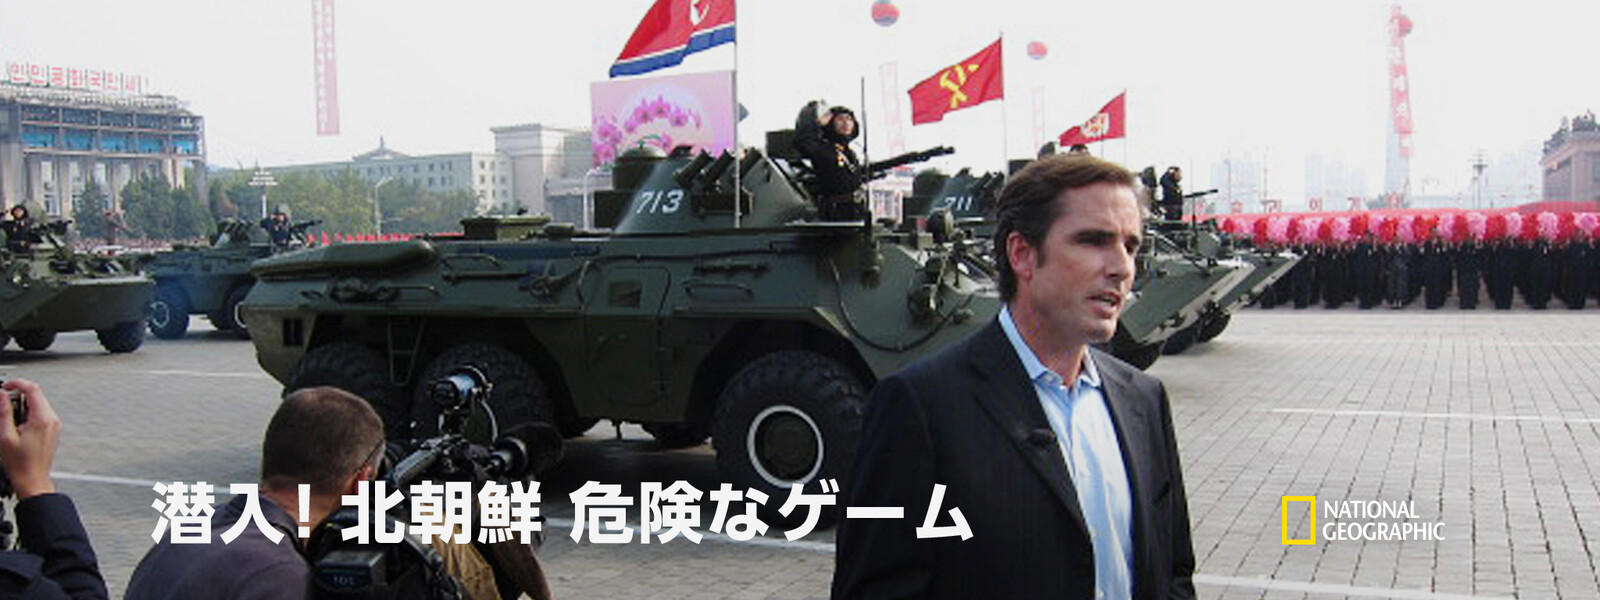 潜入! 北朝鮮：危険なゲームの動画 - 続 潜入! 北朝鮮：金王朝の真実